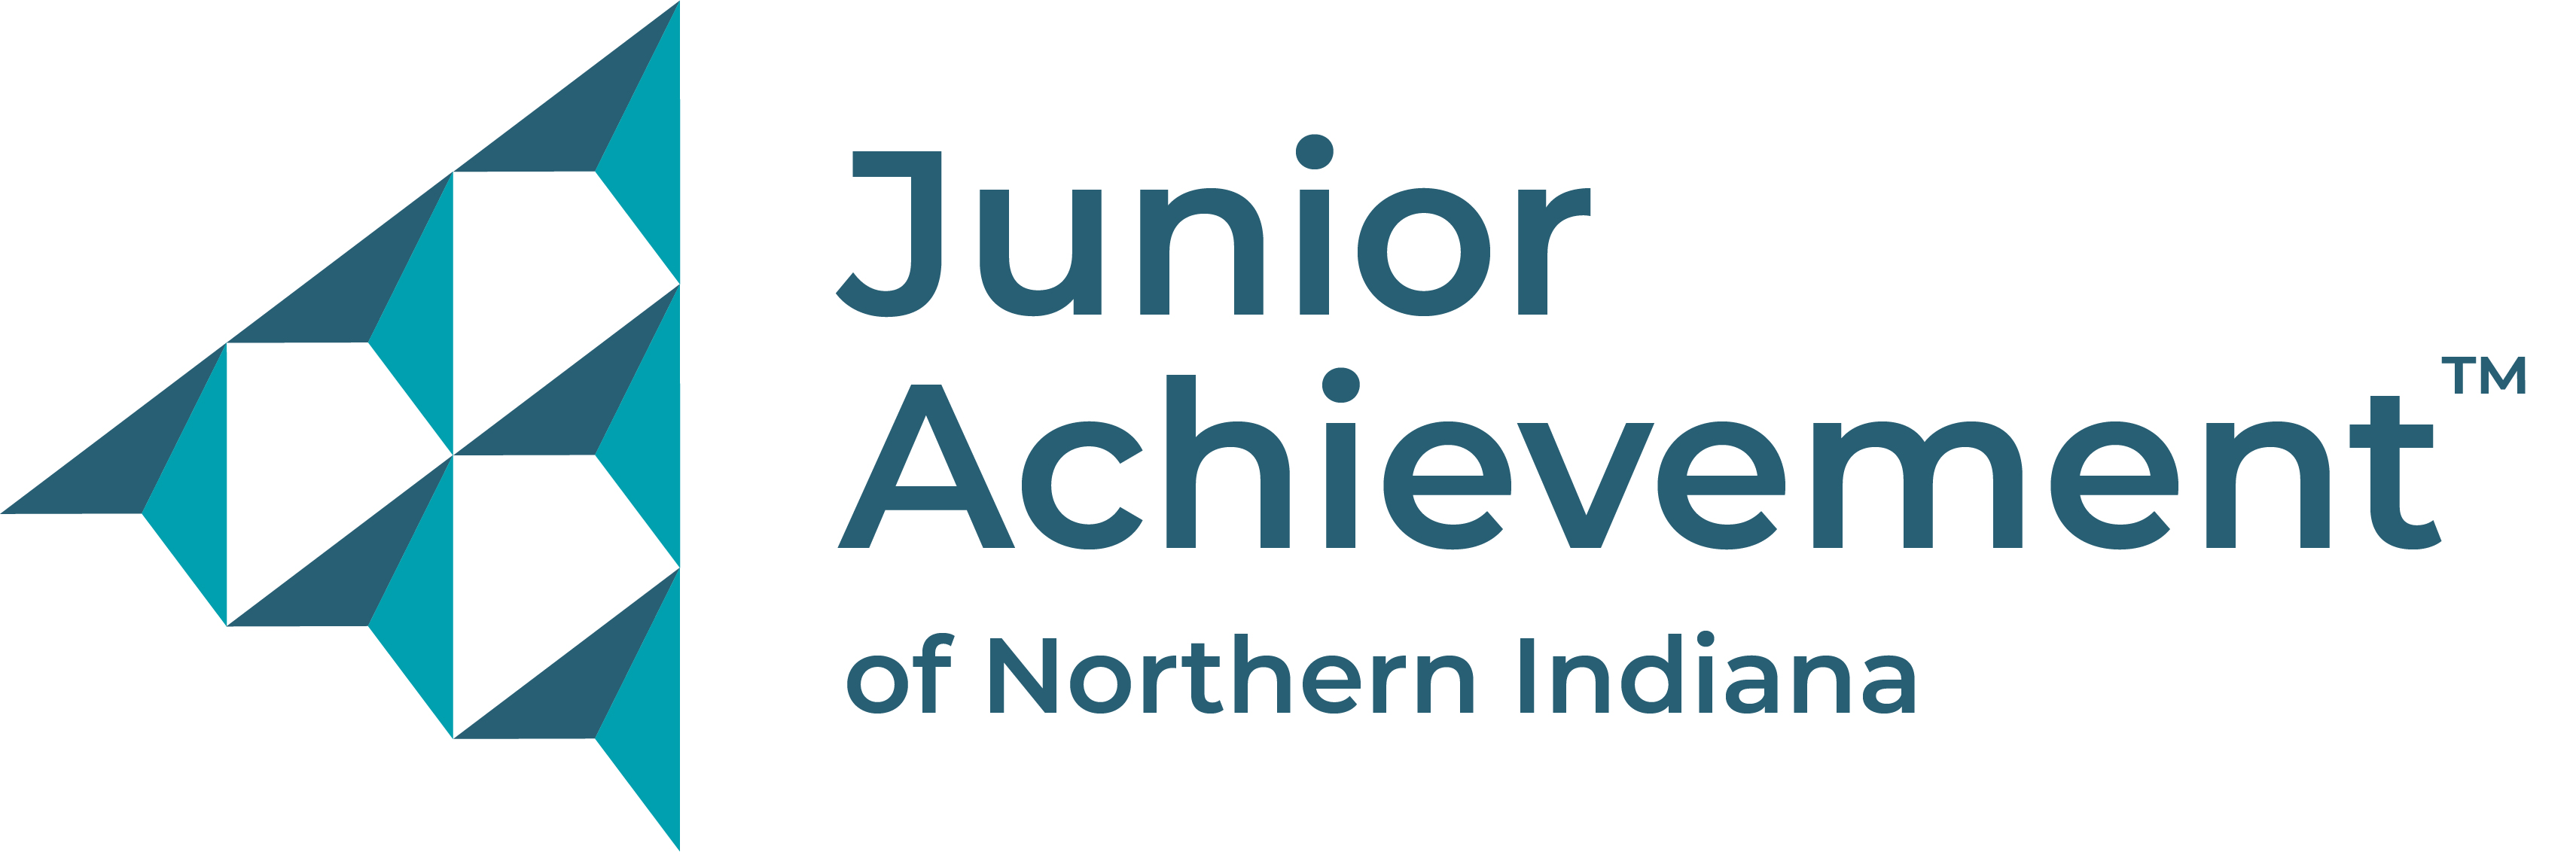 Junior Achievement of Northern Indiana 